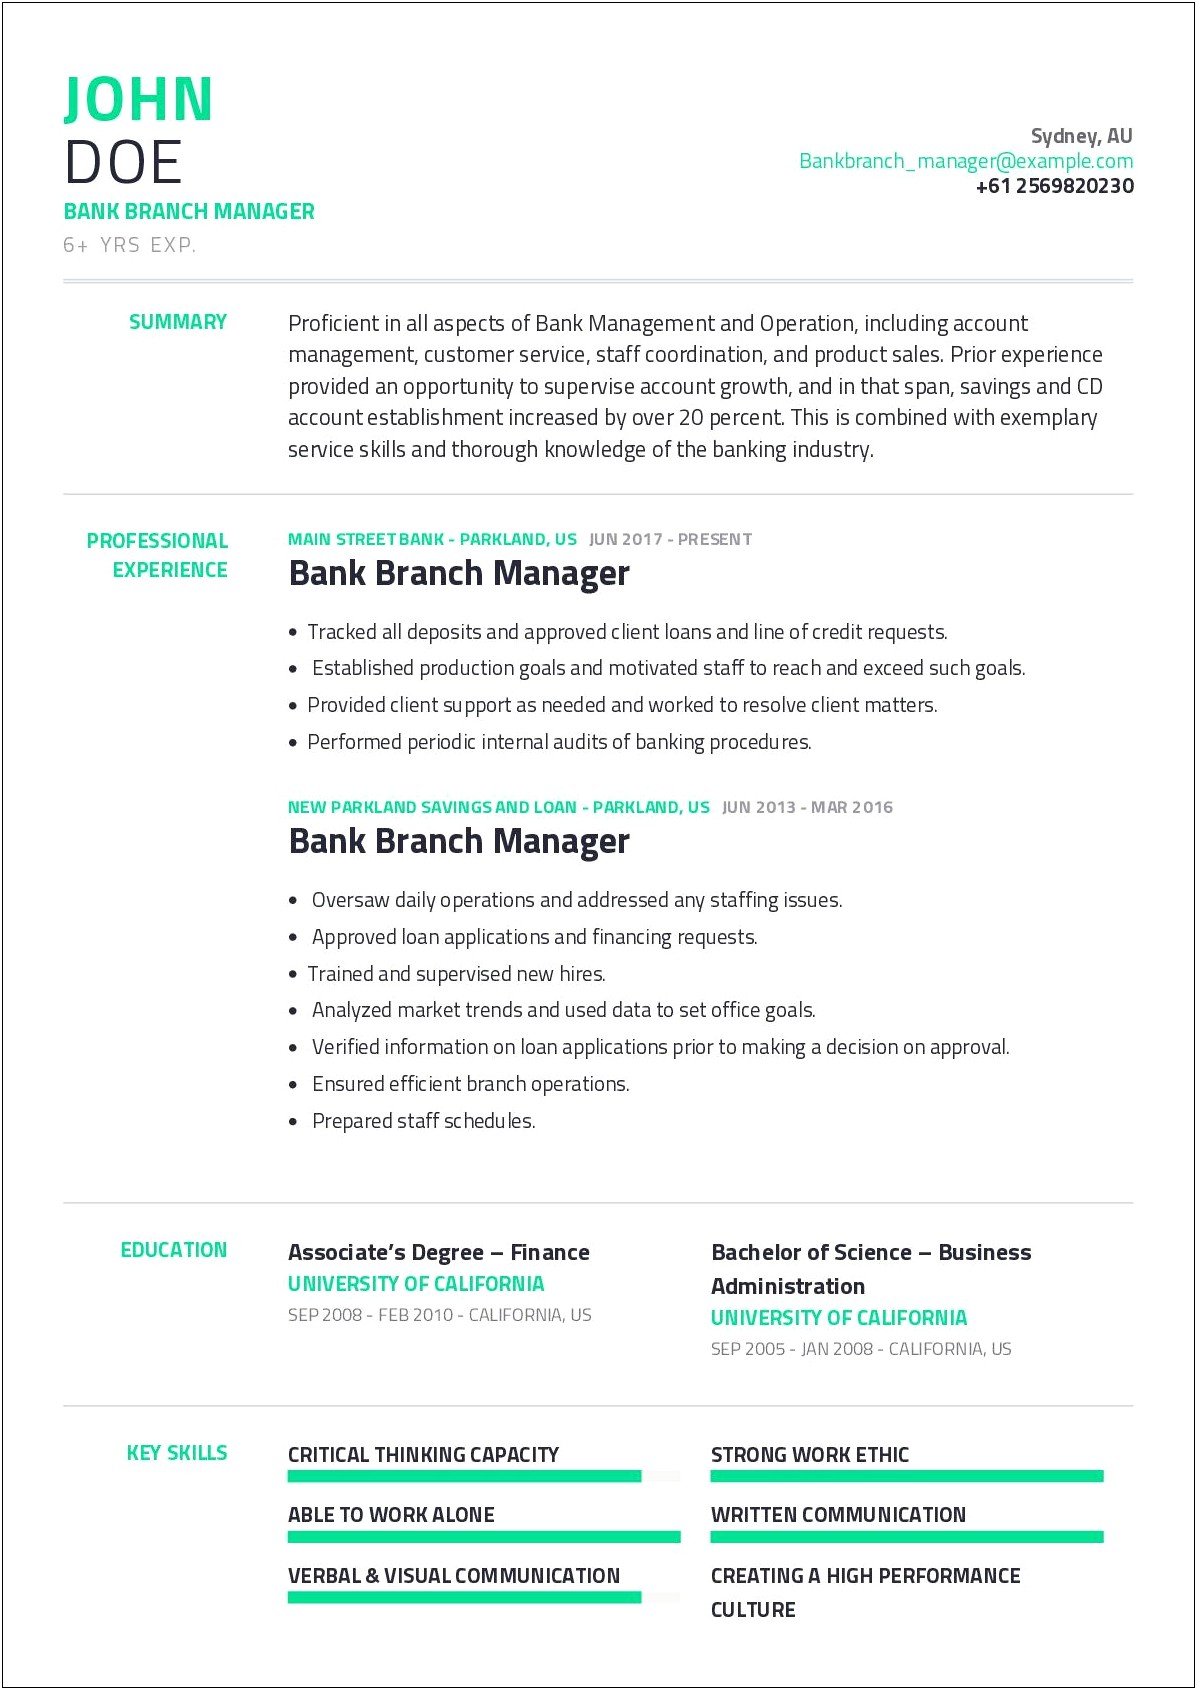 Bank Branch Manager Description For Resume